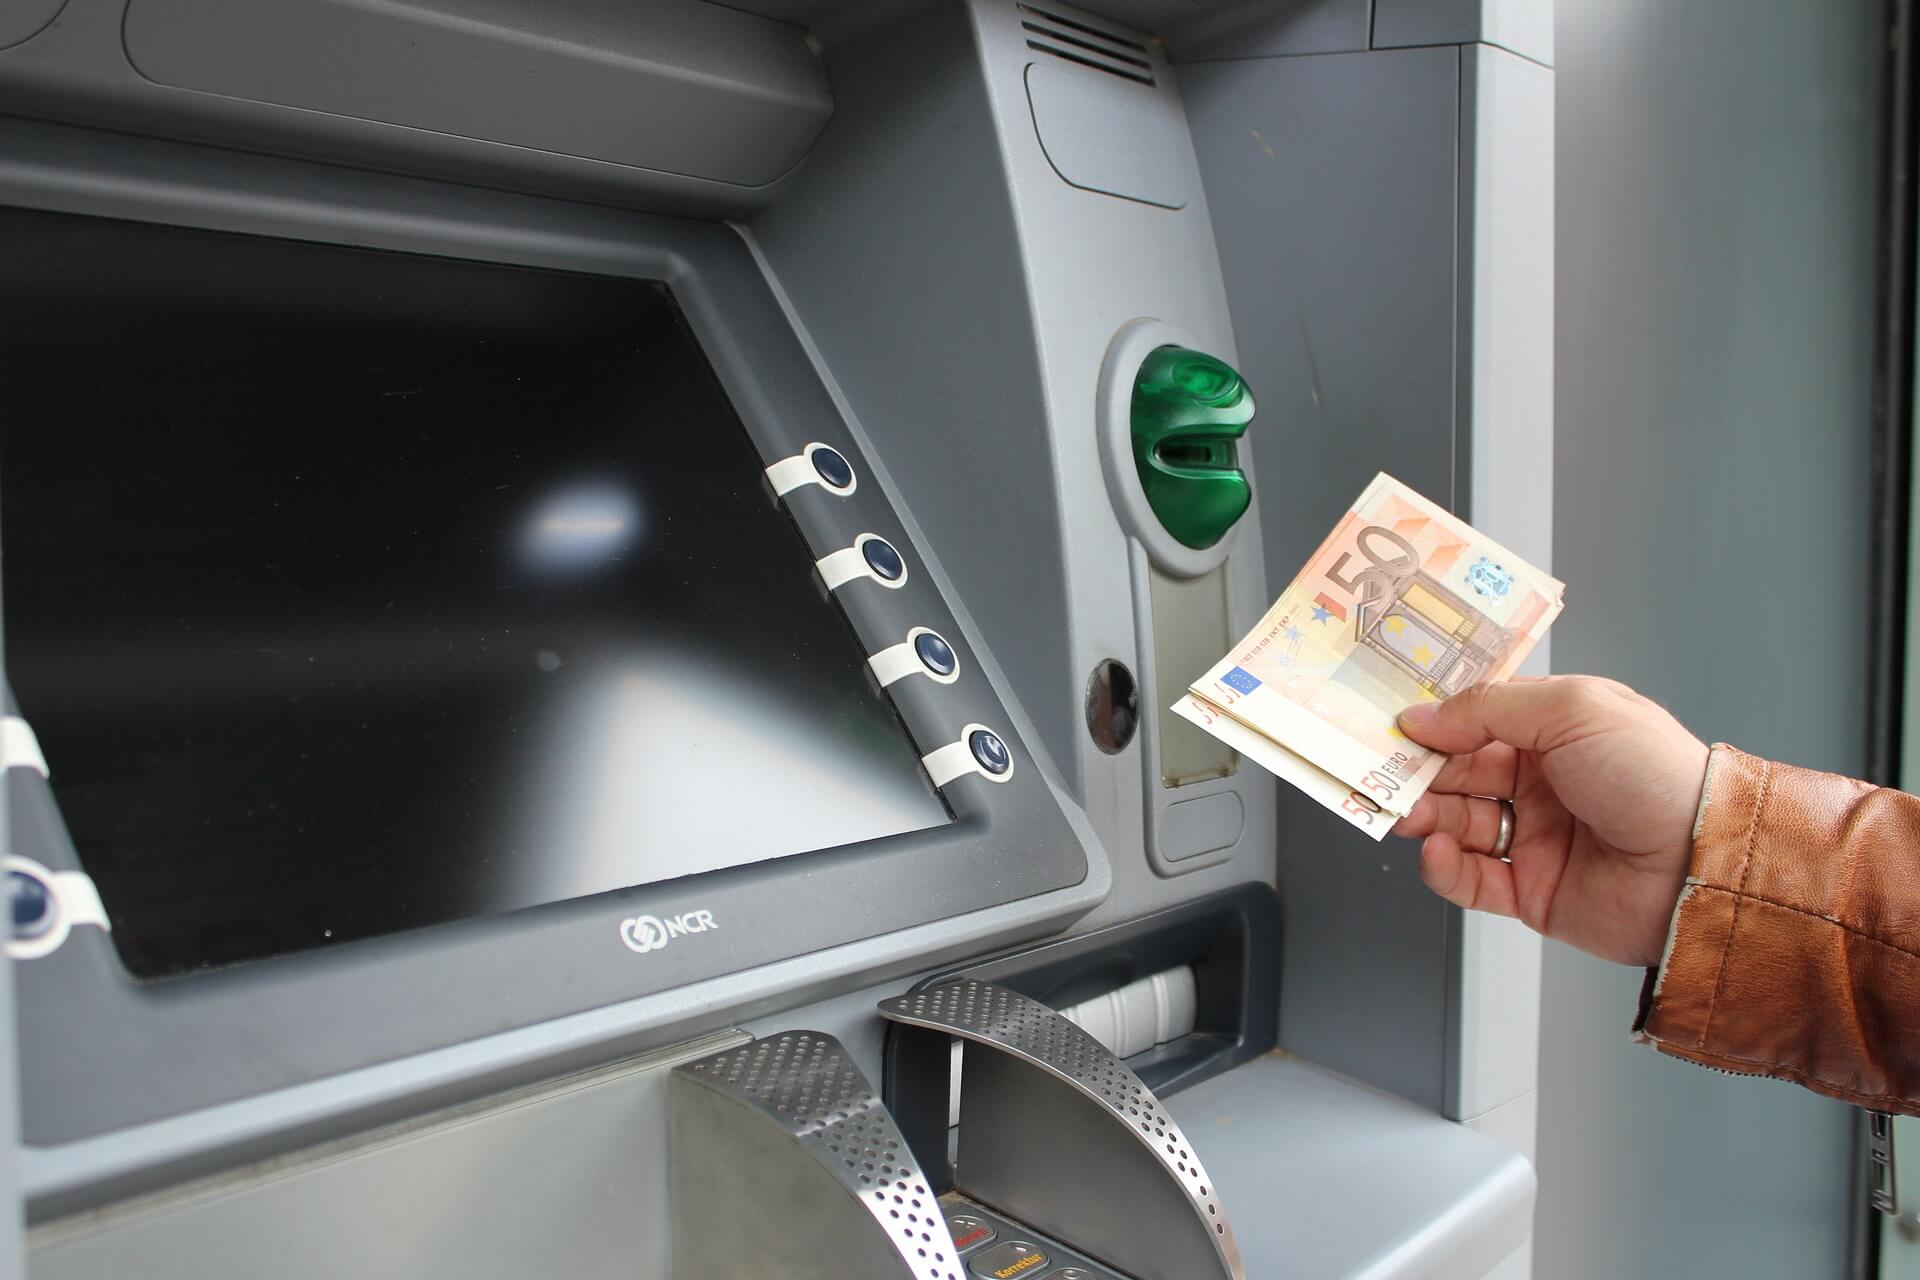 Eine irreführende Überschrift suggeriert, dass Kundinnen und Kunden der Raiffeisenbank im Hochtaunus künftig kein Bargeld erhalten könnten. Das stimmt nicht.